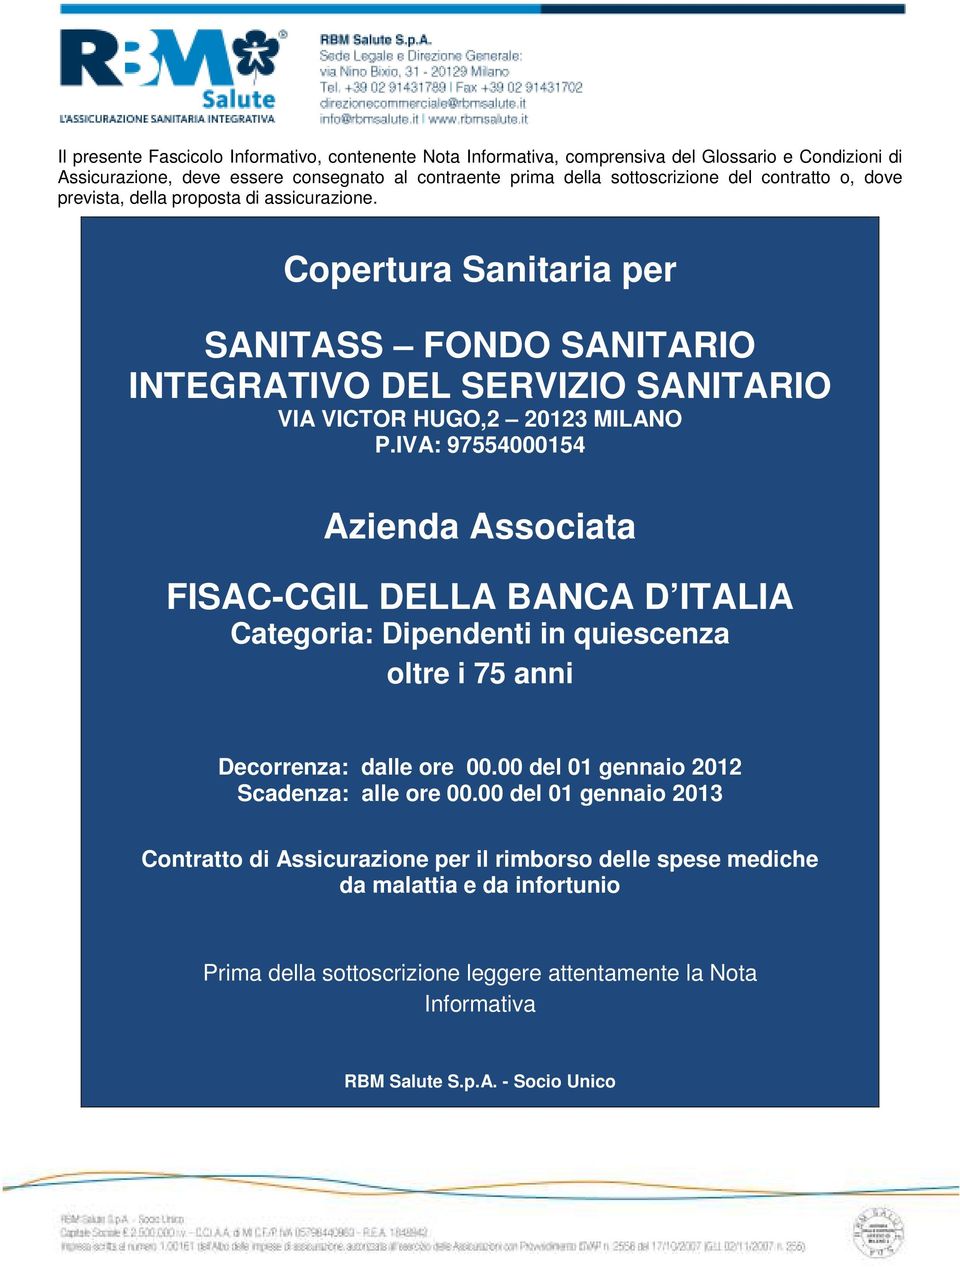 IVA: 97554000154 Azienda Associata FISAC-CGIL DELLA BANCA D ITALIA Categoria: Dipendenti in quiescenza oltre i 75 anni Decorrenza: dalle ore 00.00 del 01 gennaio 2012 Scadenza: alle ore 00.